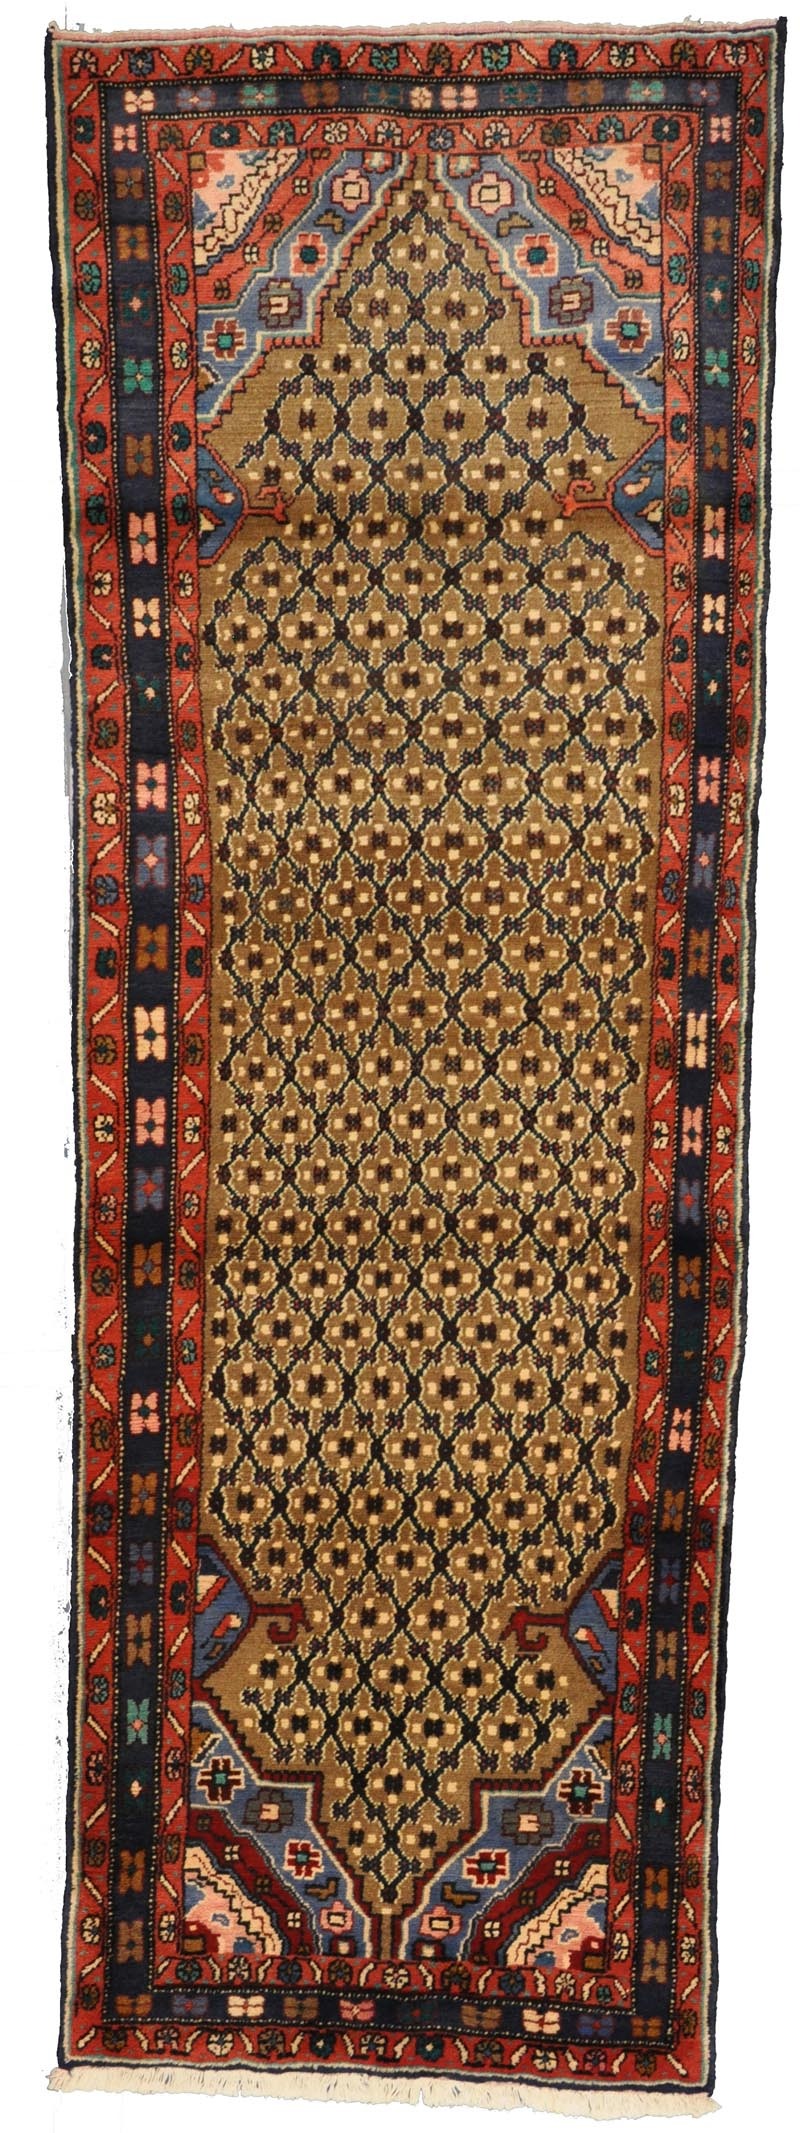 handmade vintage persian hamadan rug online antique carpet runner vintage runner rug hallway rug refined carpet rugs orange county rug store